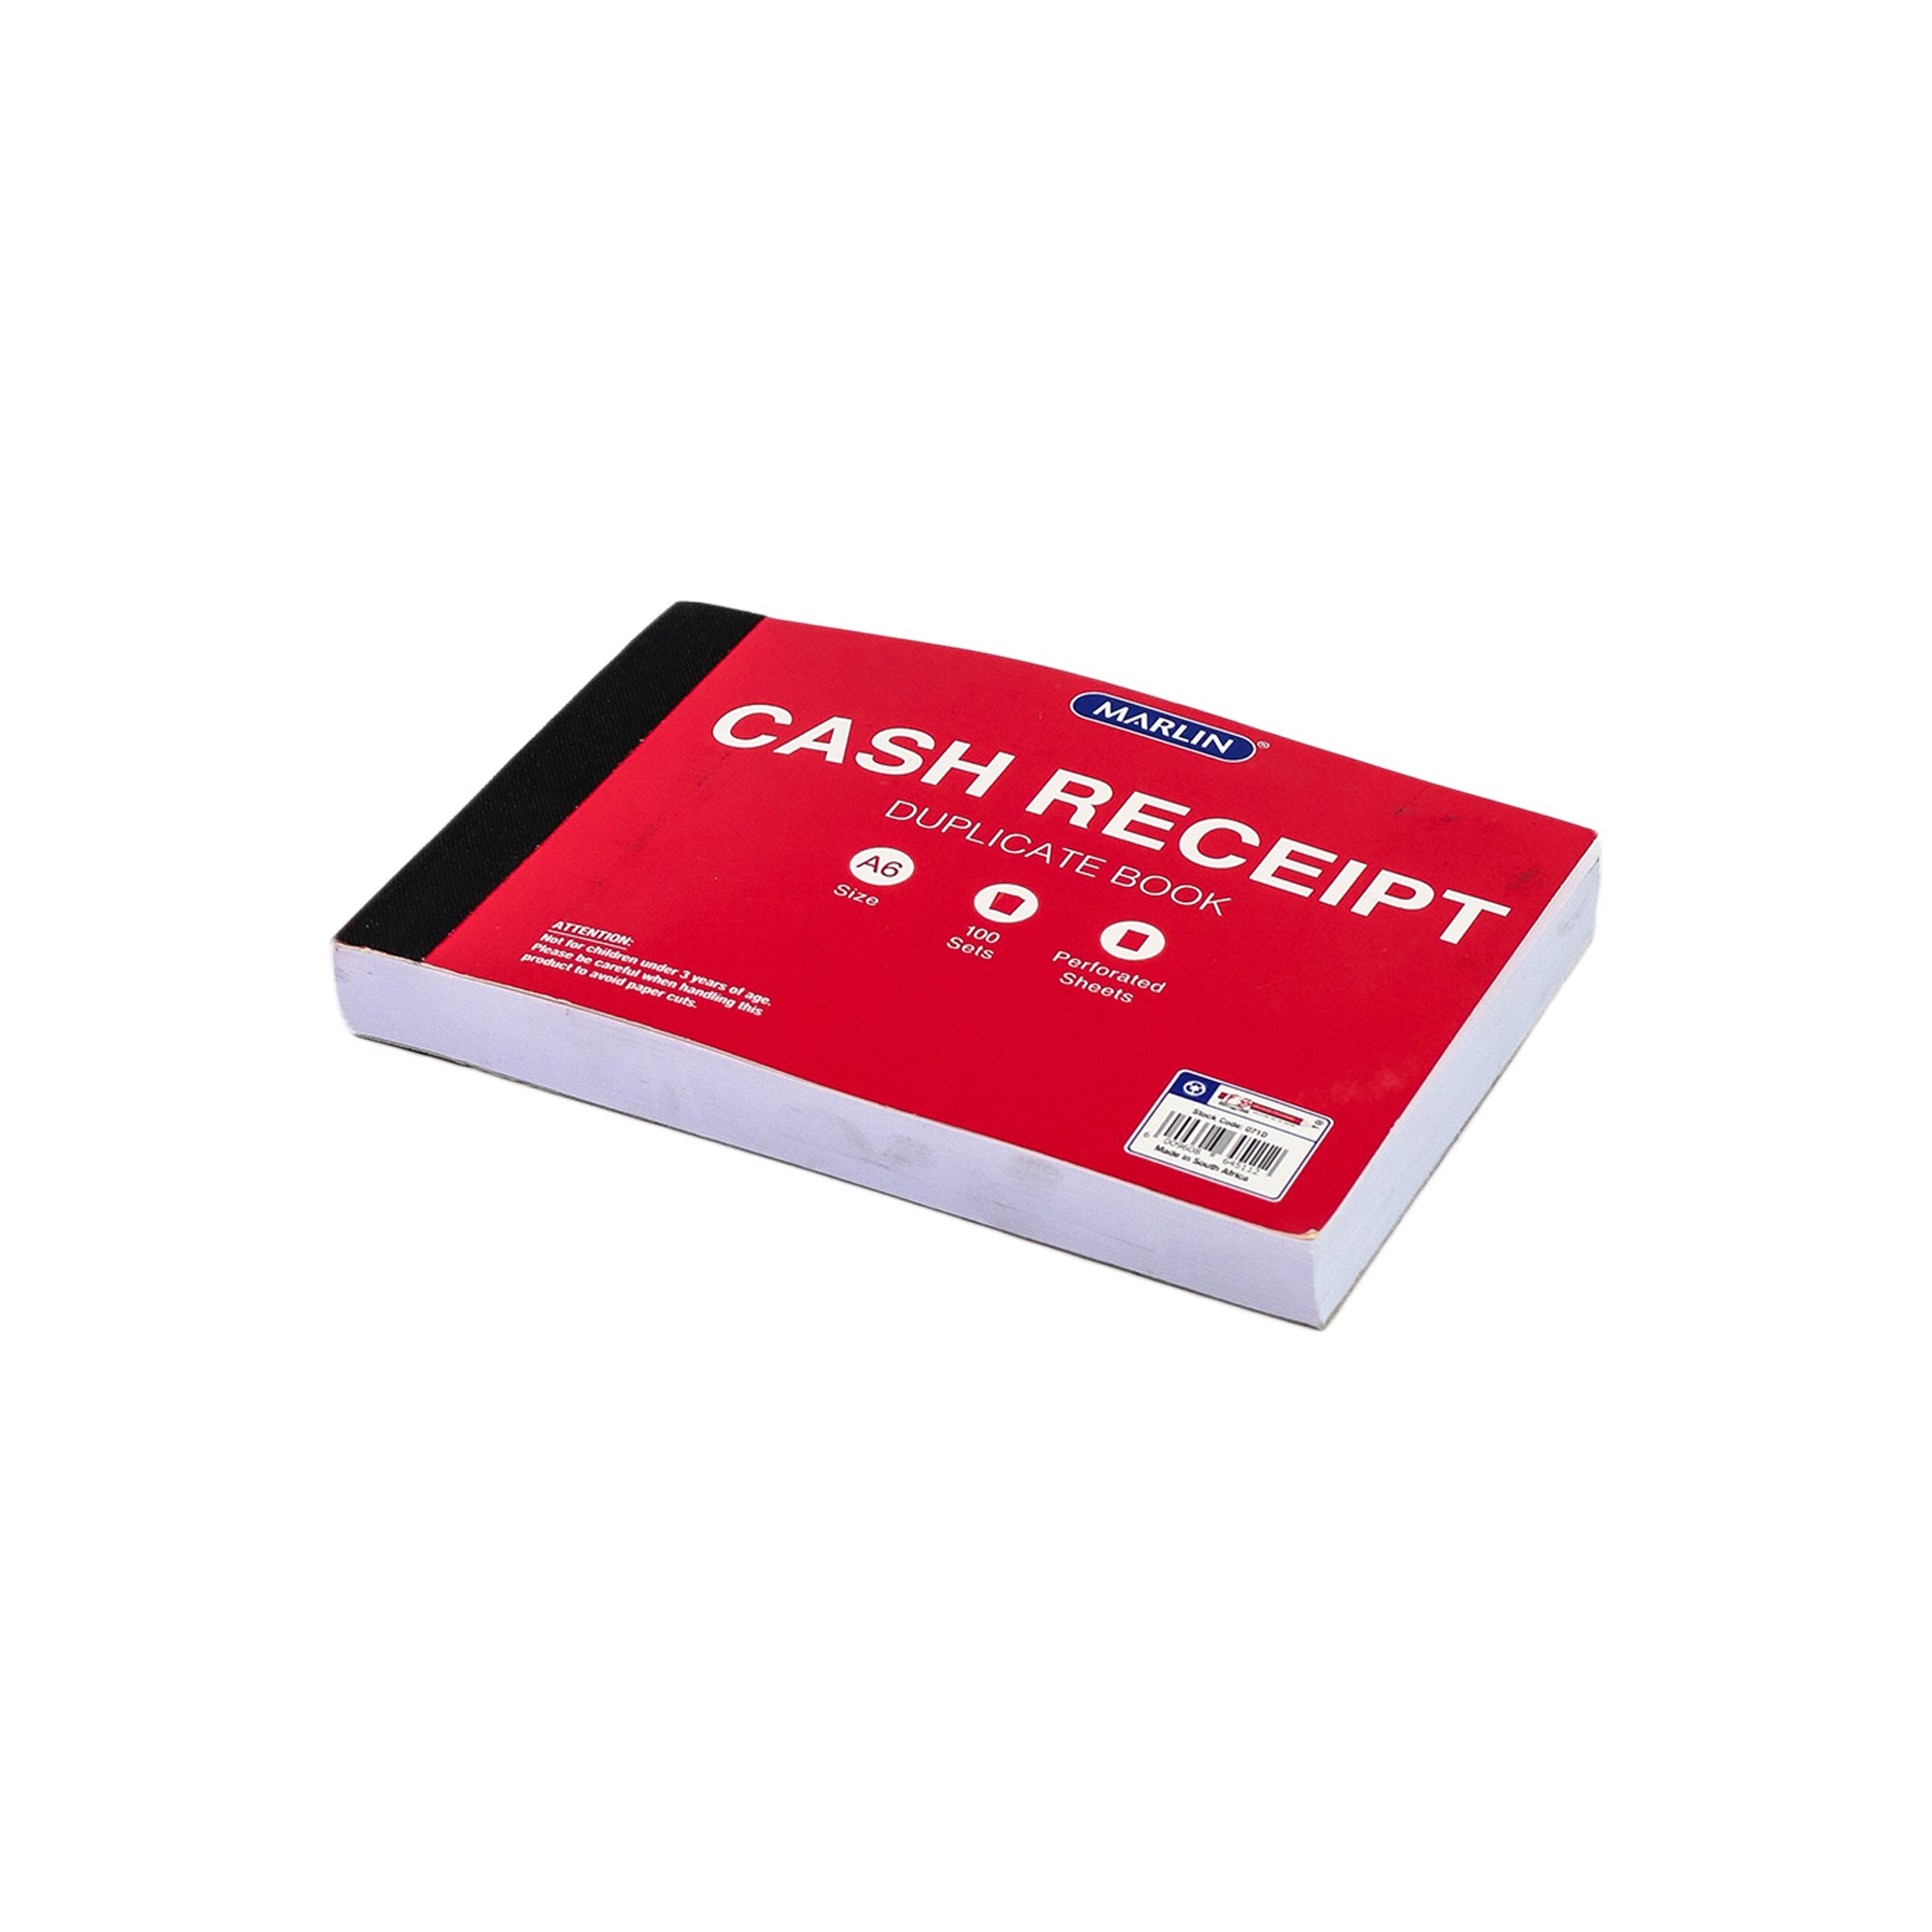 Book Carbon A6 Duplicate Cash receipt M005